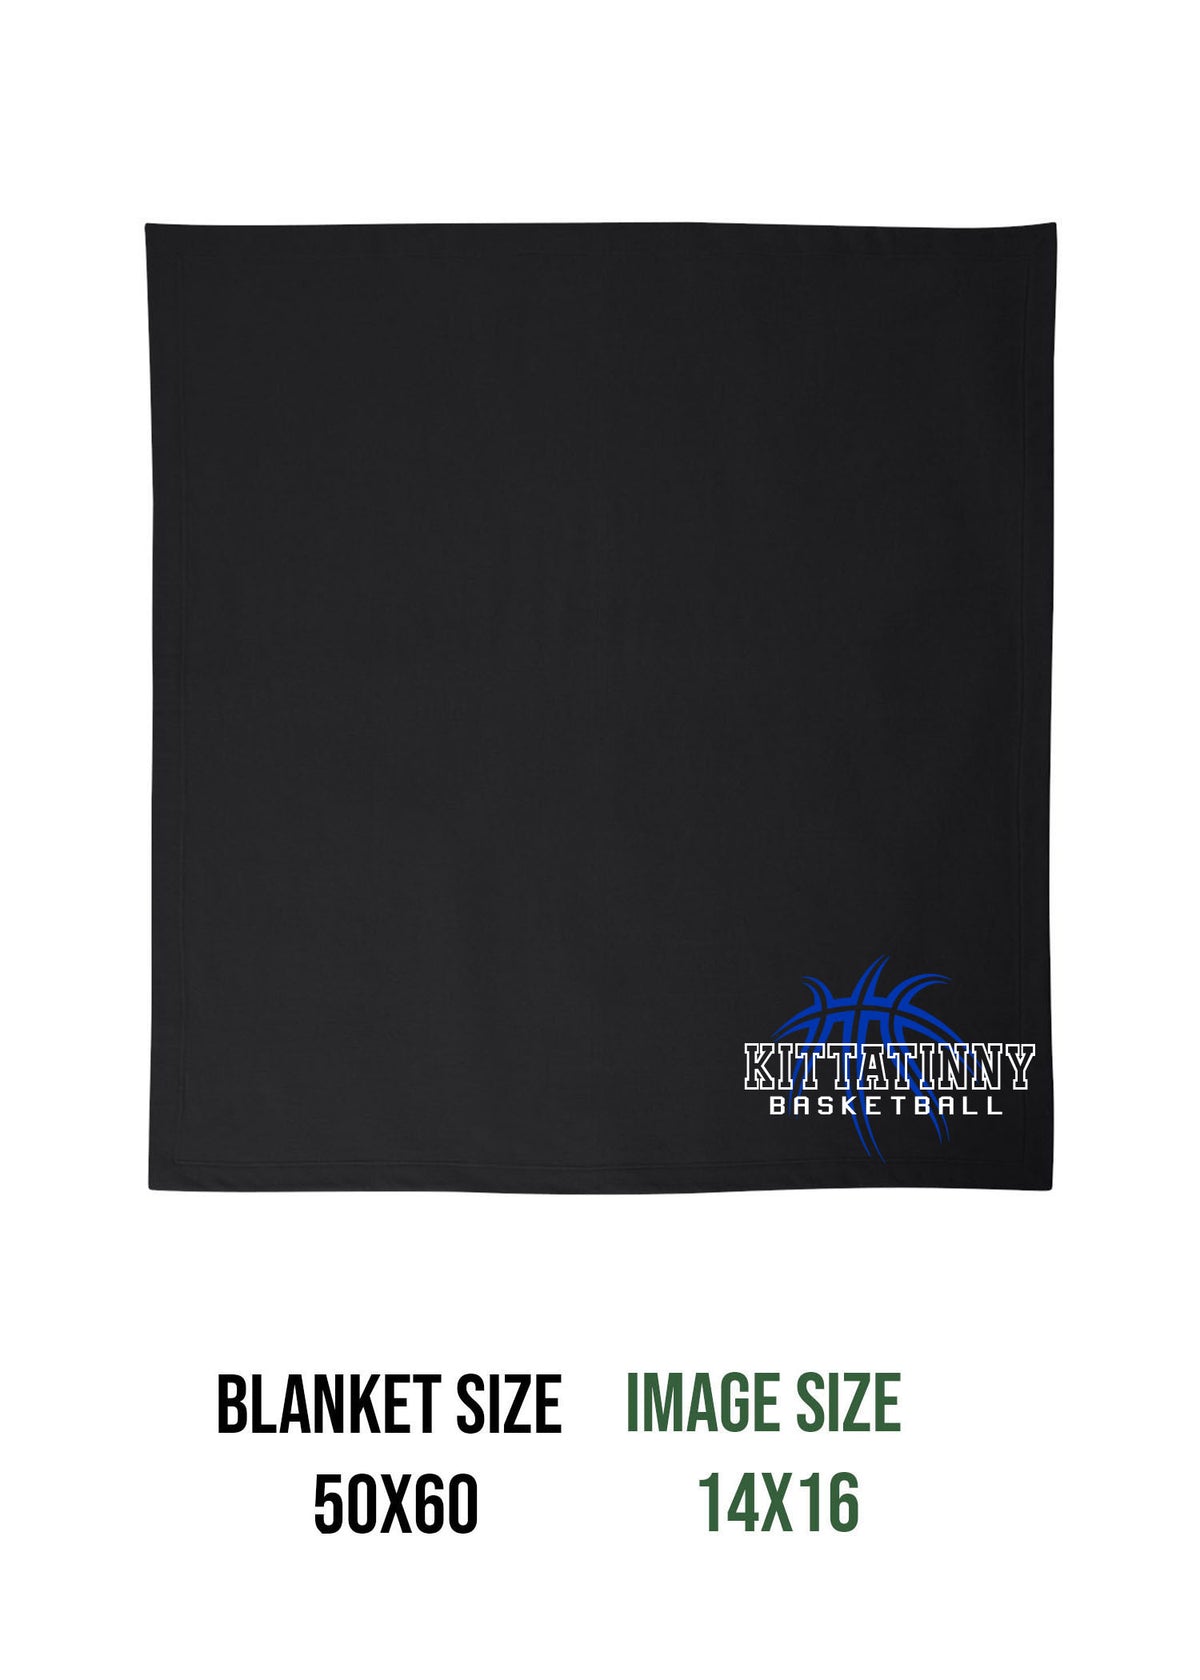 Kittatinny Basketball Design 4 Blanket